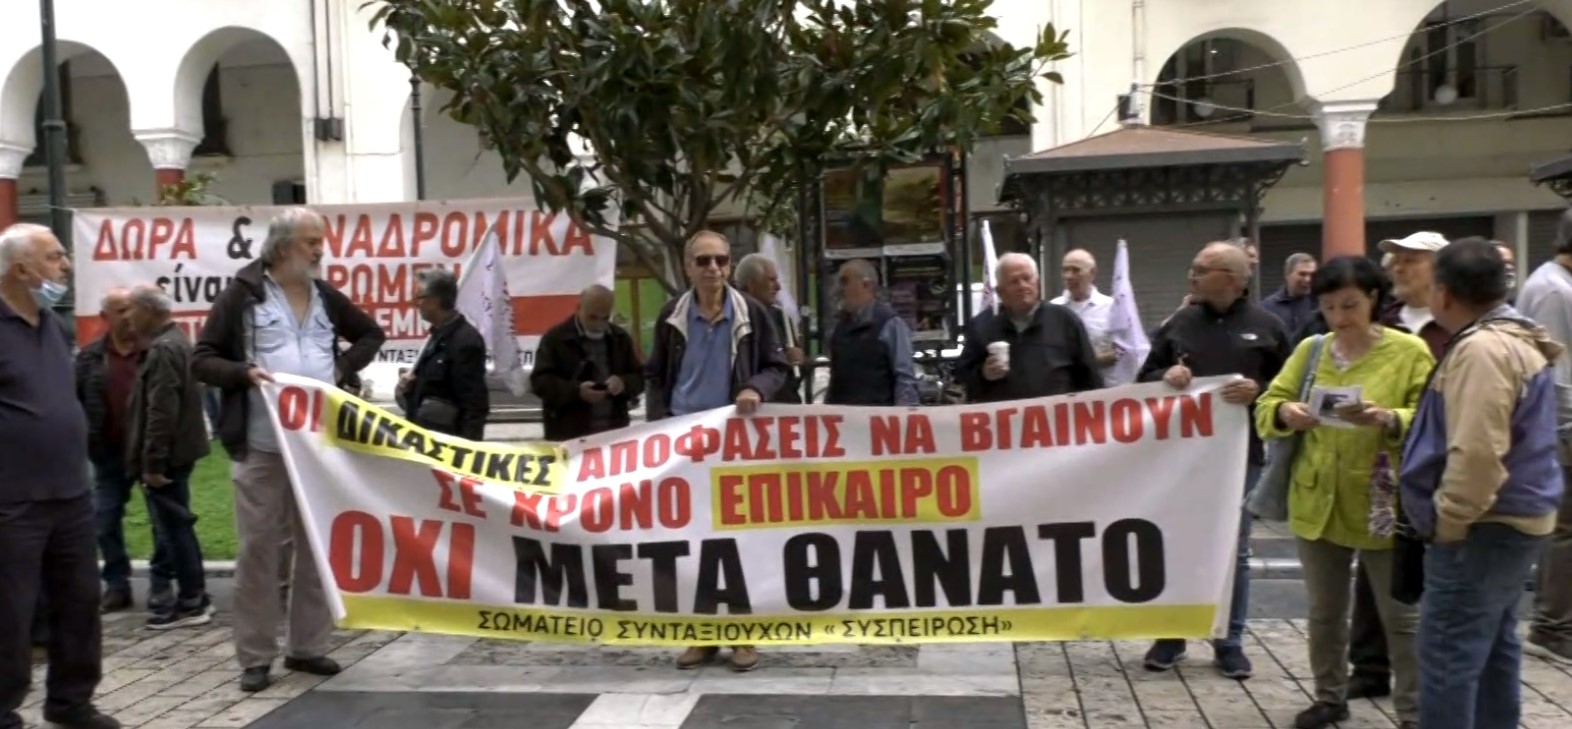 Διαμαρτυρία συνταξιούχων στη Θεσσαλονίκη: Διεκδικούν αύξηση των συντάξεων και άμεση εκδίκαση των προσφυγών